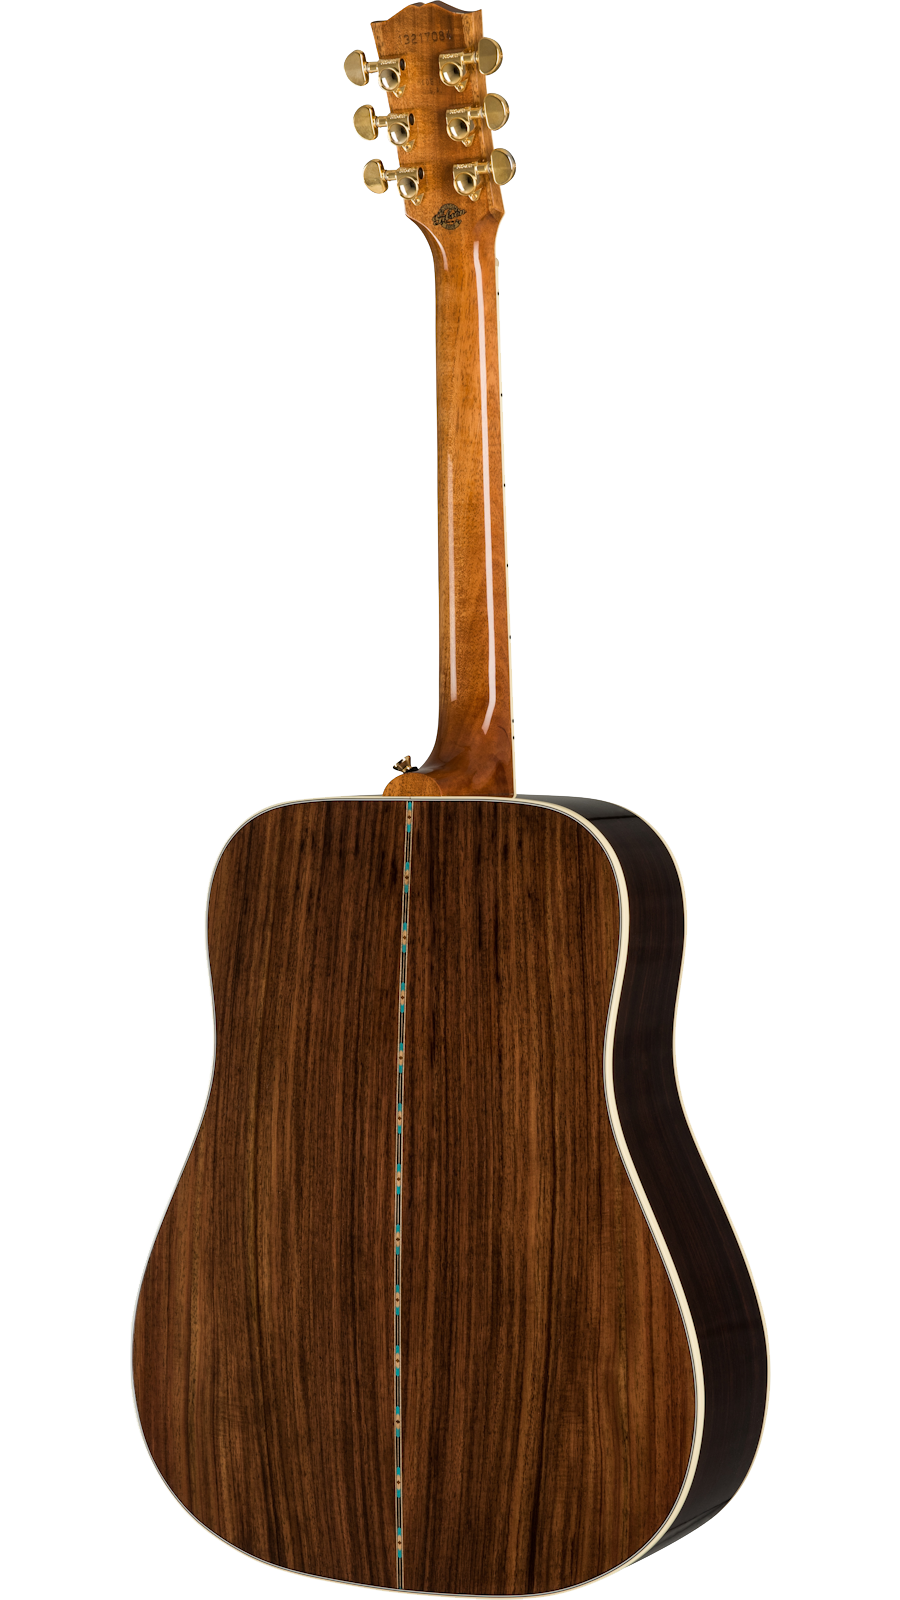 Gibson Hummingbird Deluxe Rosewood Burst w/case